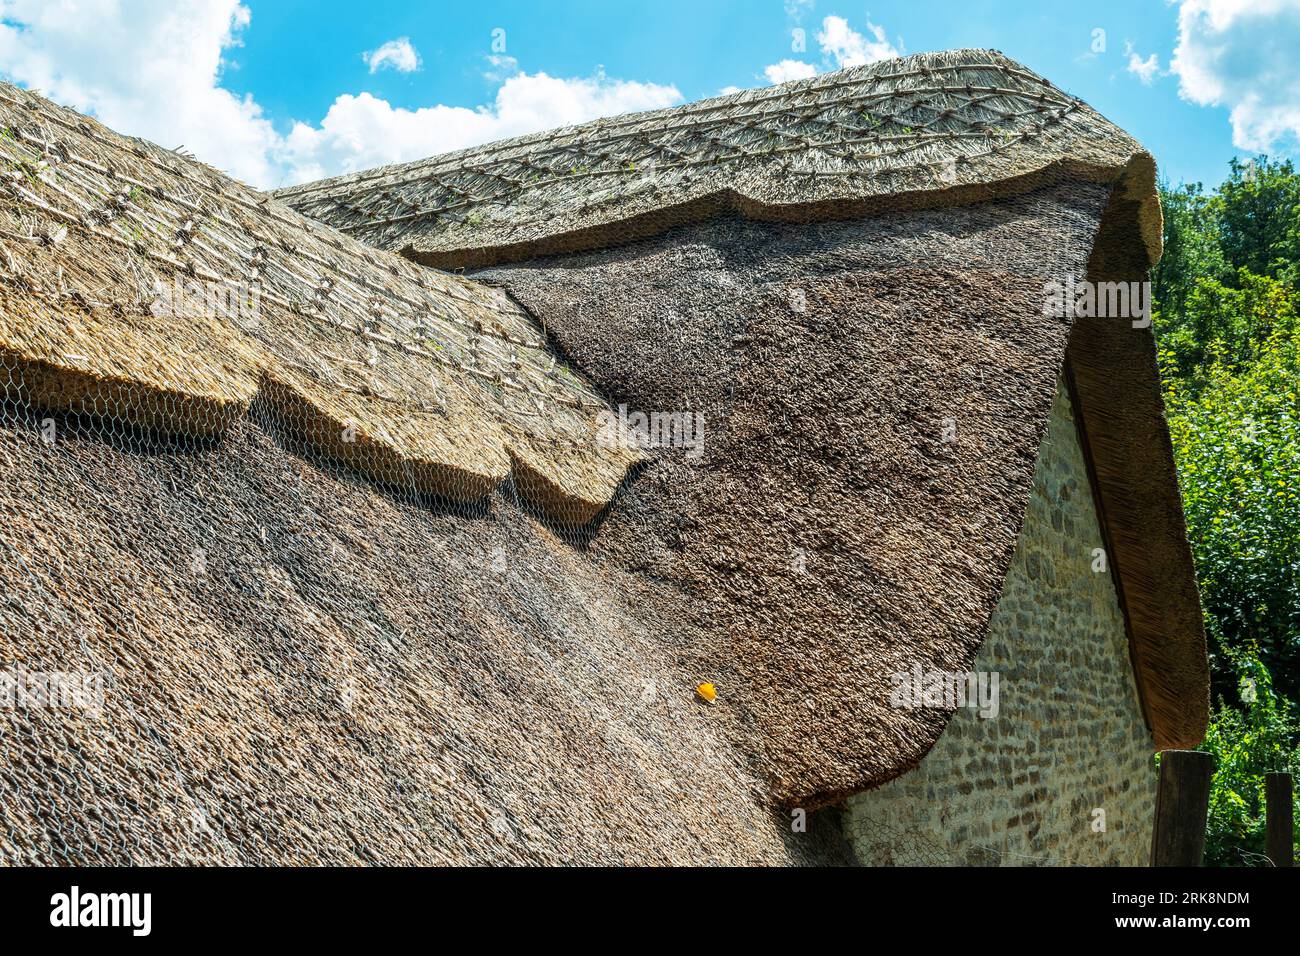 Un beau toit de chaume traditionnel en Angleterre Banque D'Images